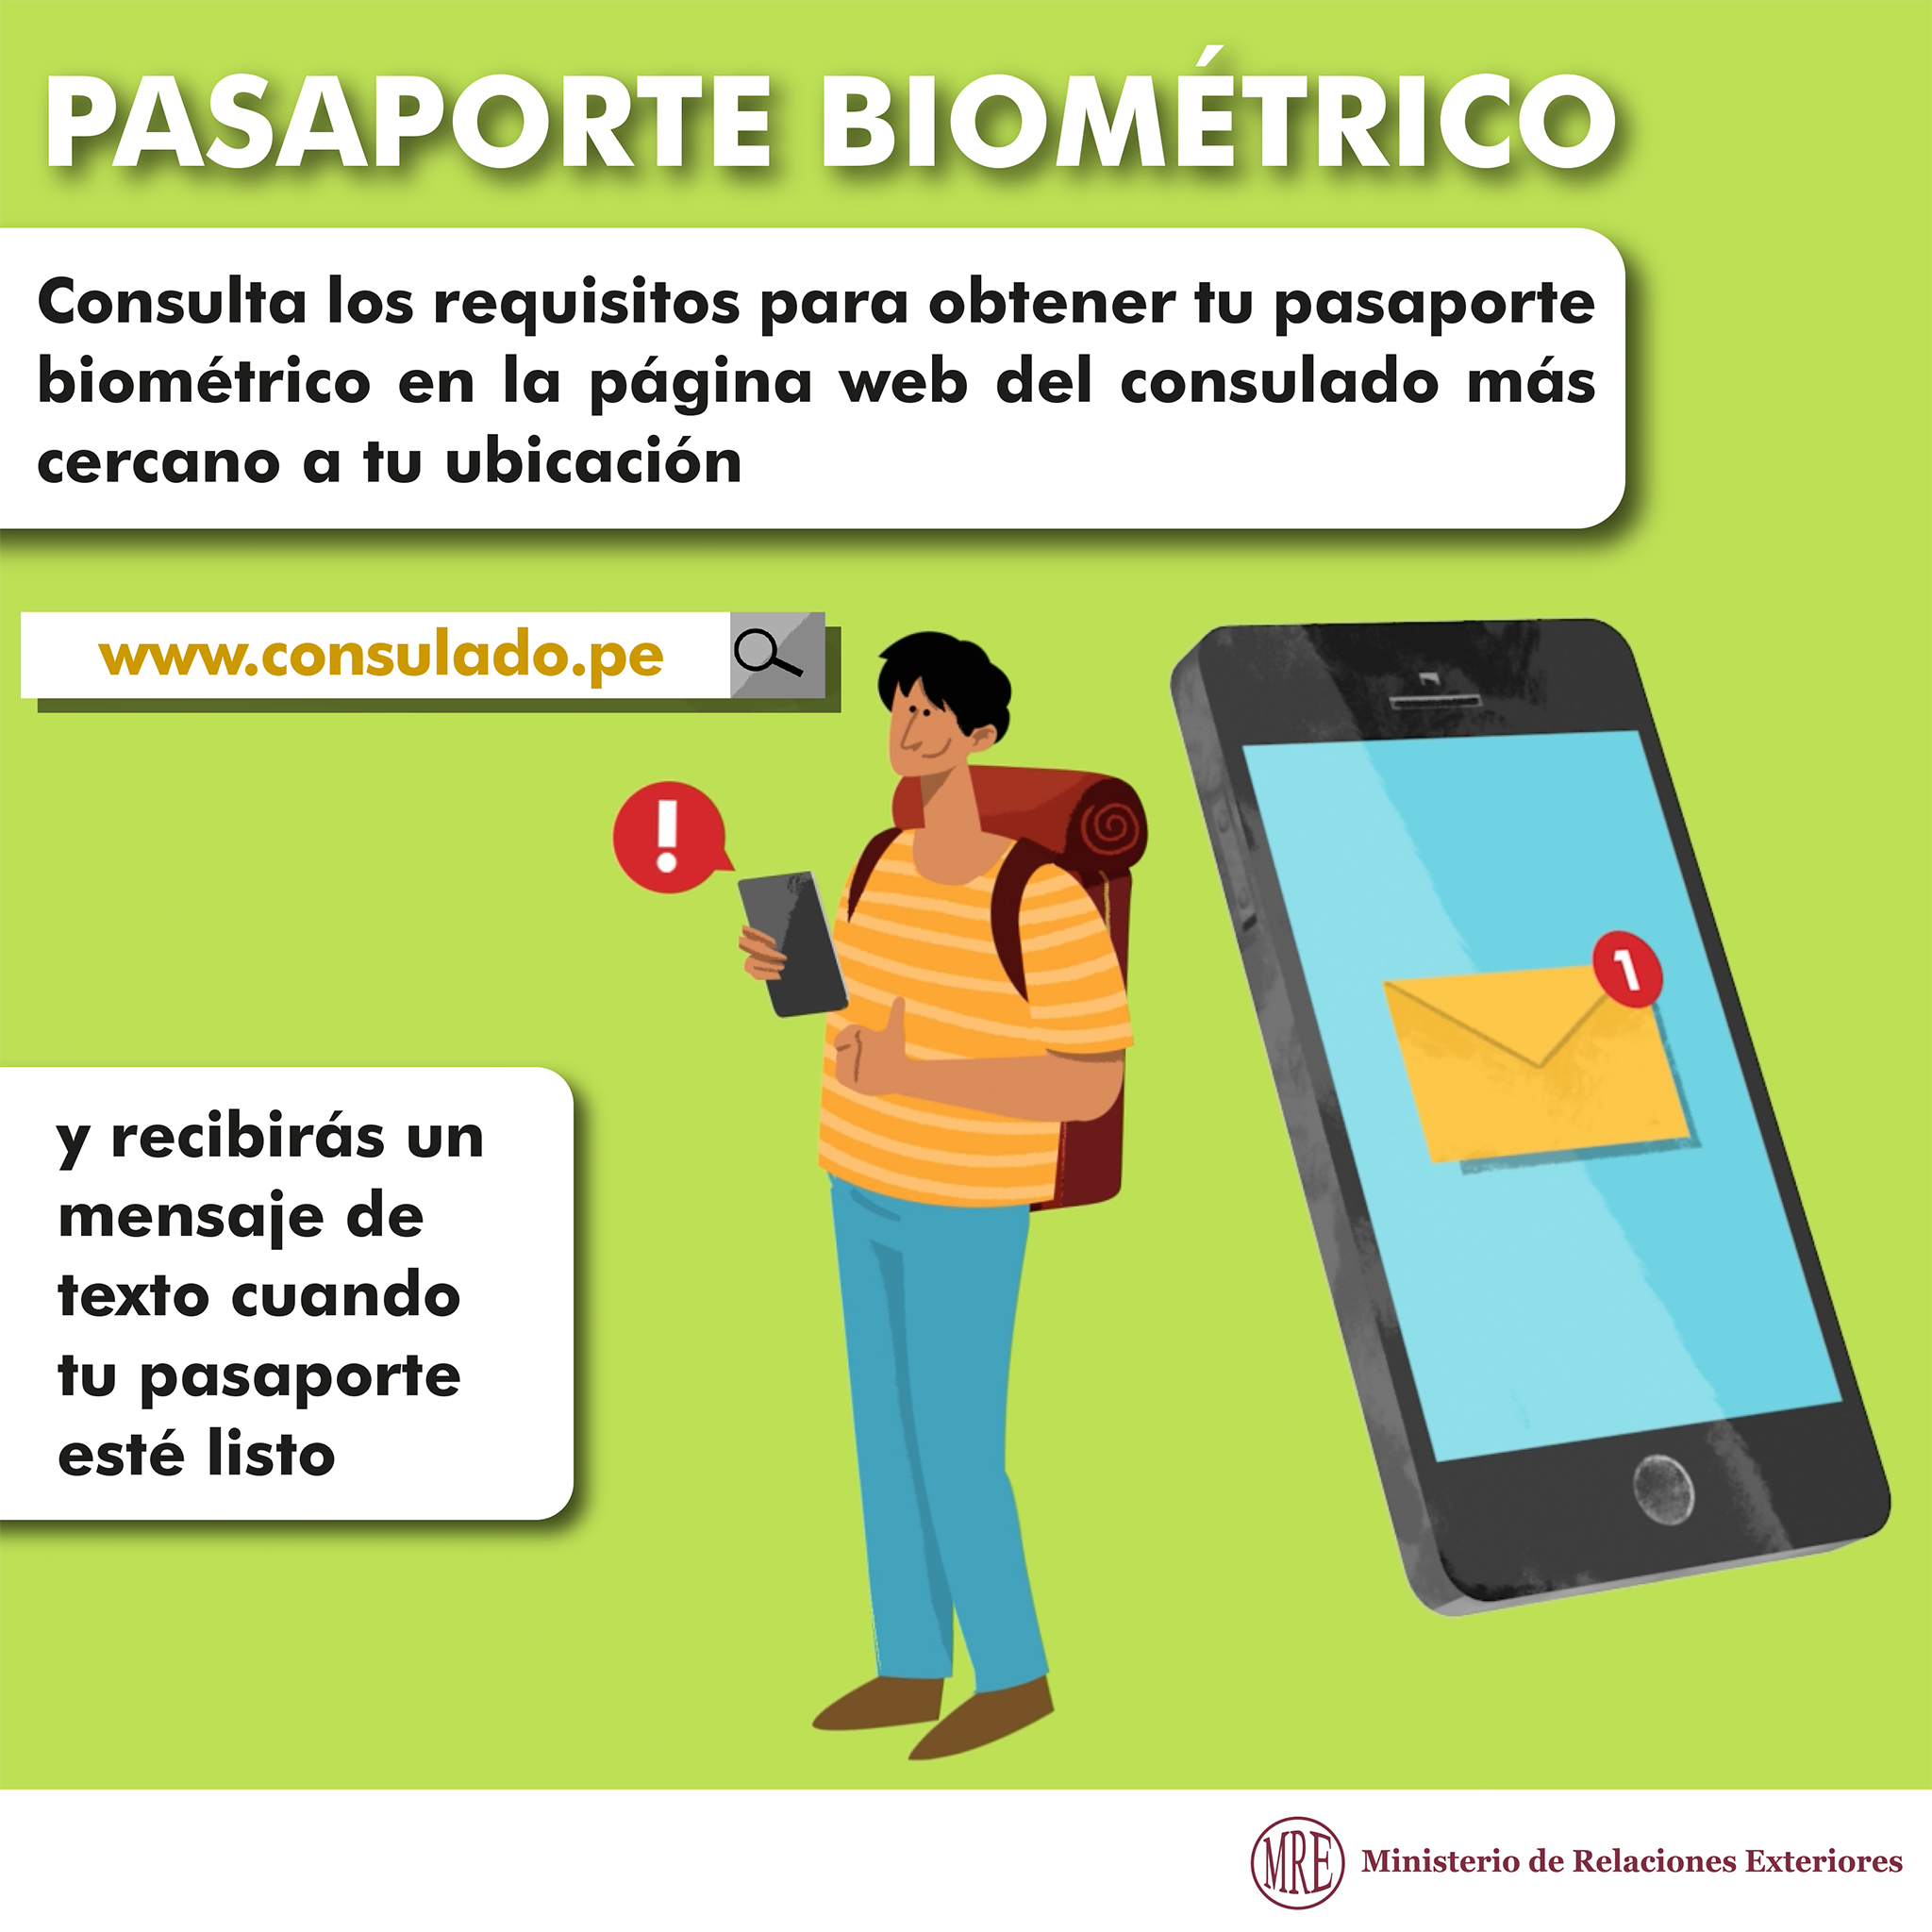 cita de pago por telefono pasaporte biometrico